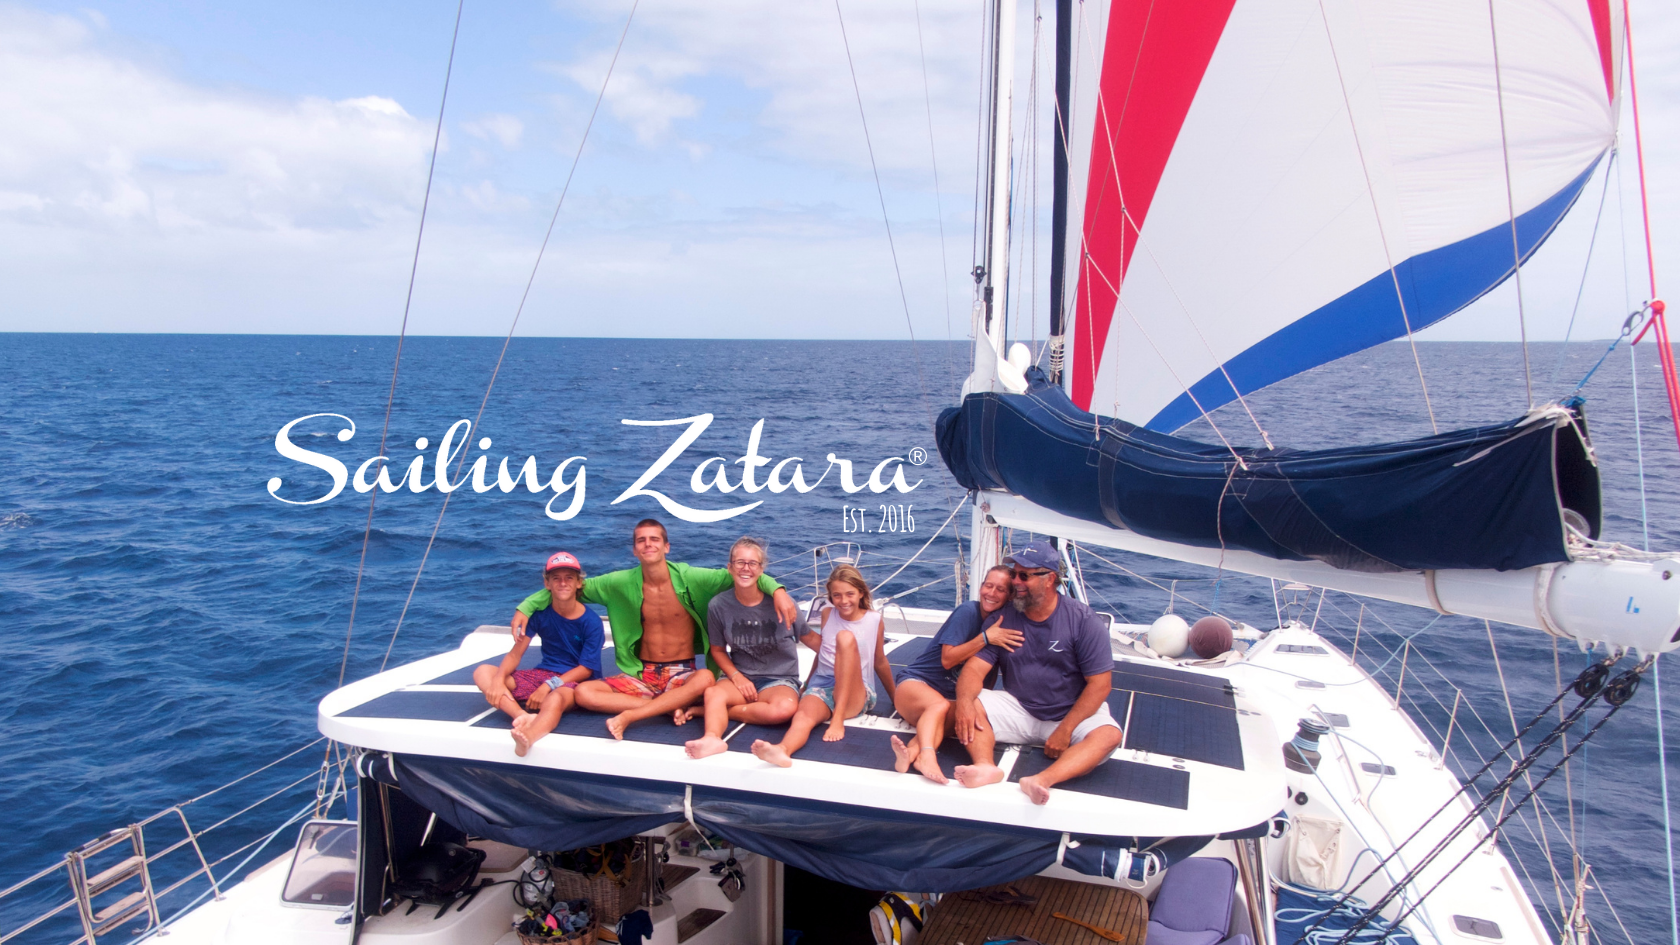 Sailing Zatara